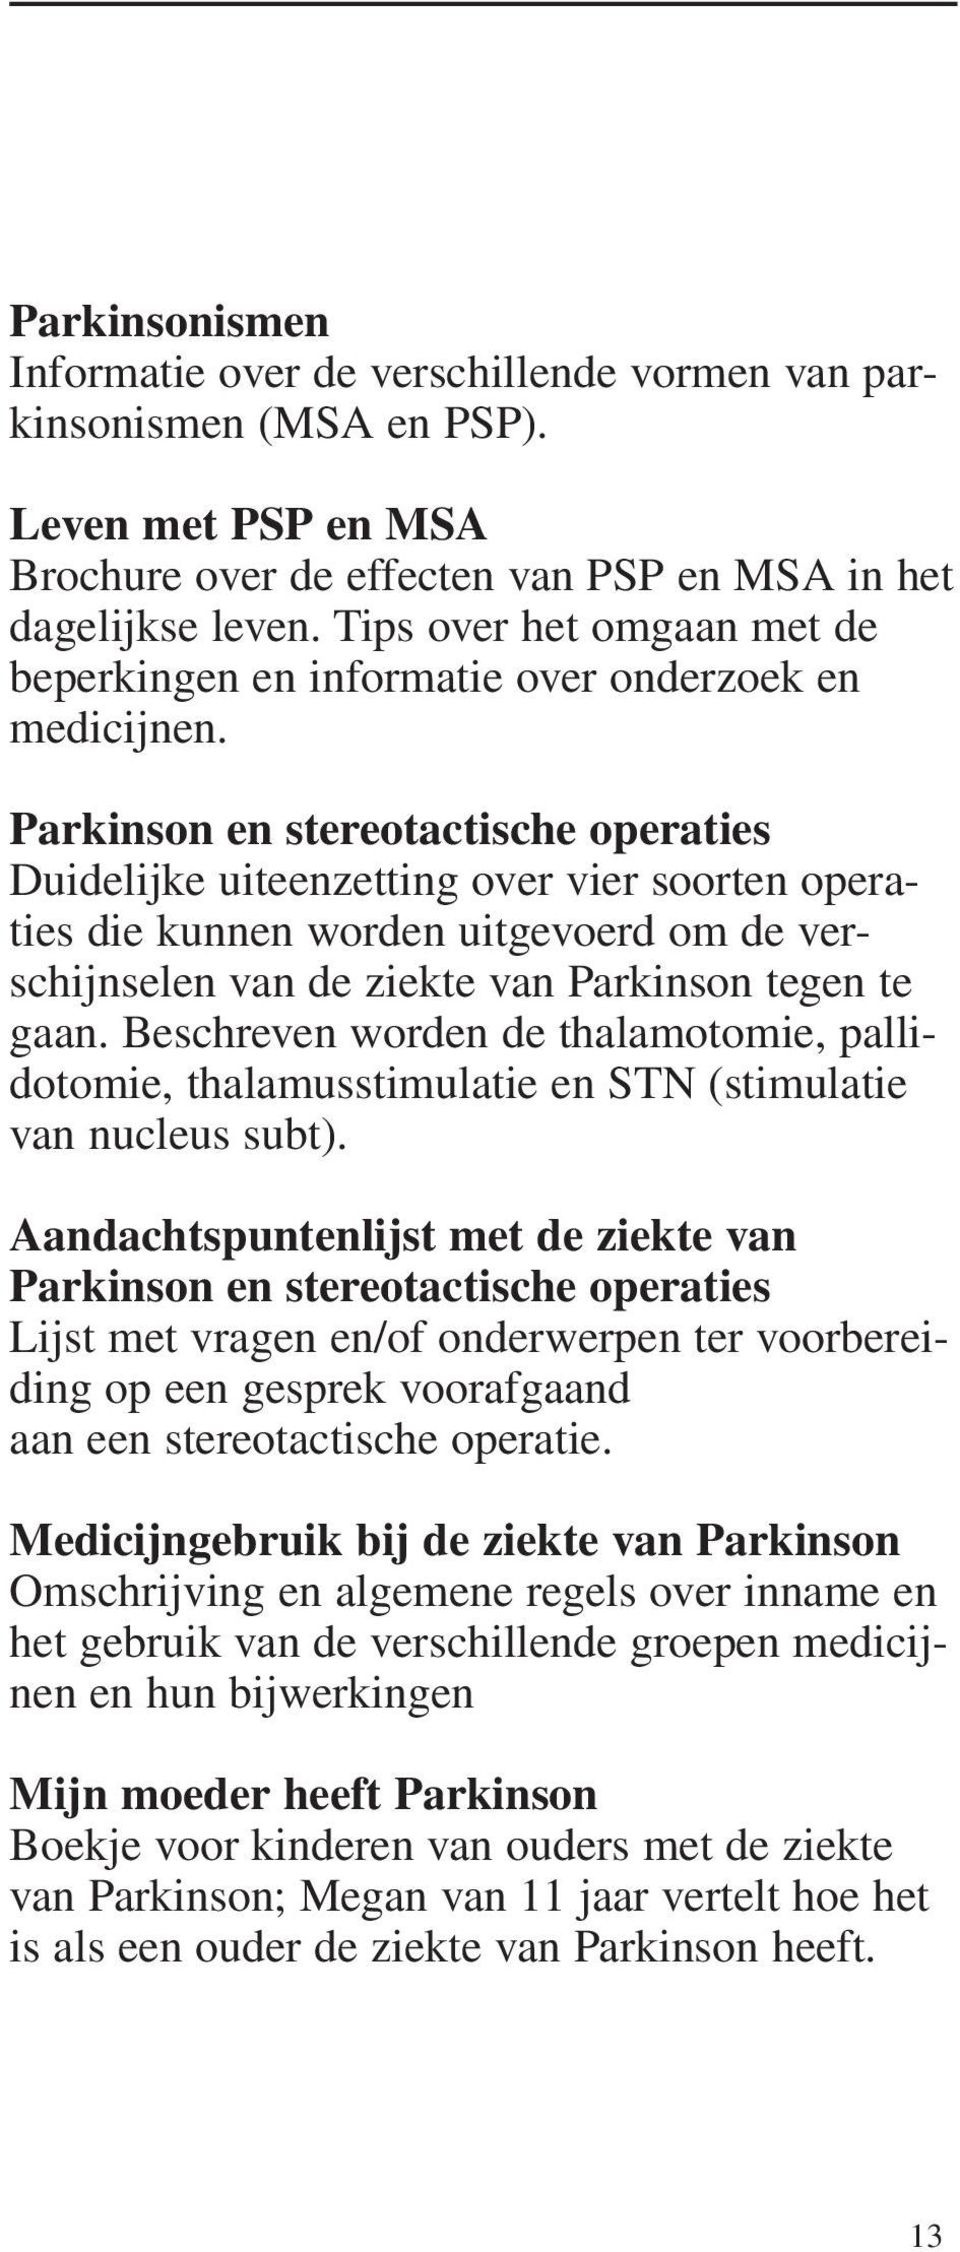 Parkinson en stereotactische operaties Duidelijke uiteenzetting over vier soorten operaties die kunnen worden uitgevoerd om de verschijnselen van de ziekte van Parkinson tegen te gaan.